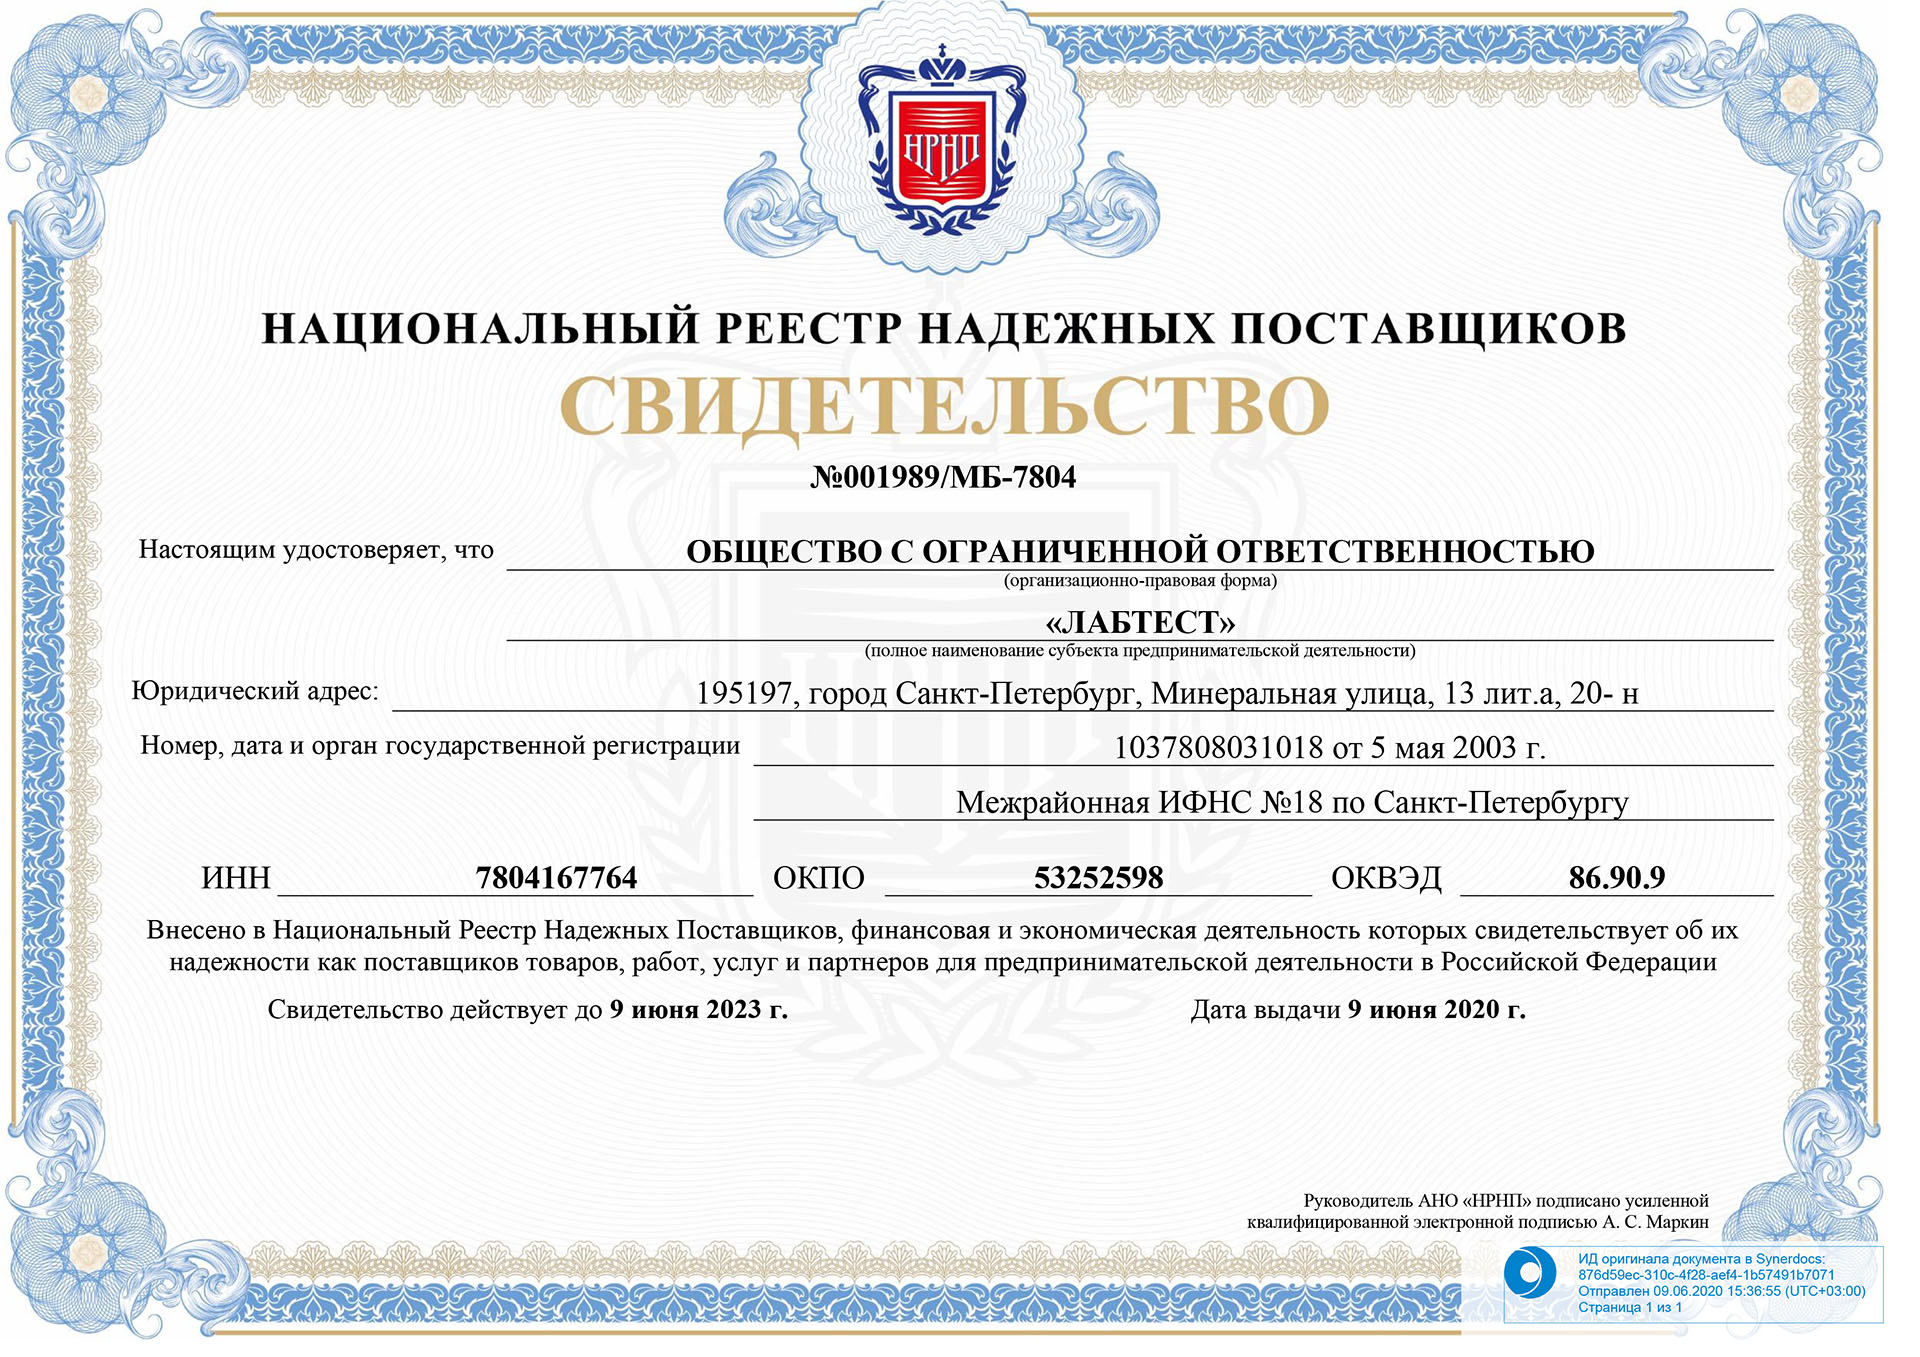 Сертификат реестра надежных поставщиков РФ